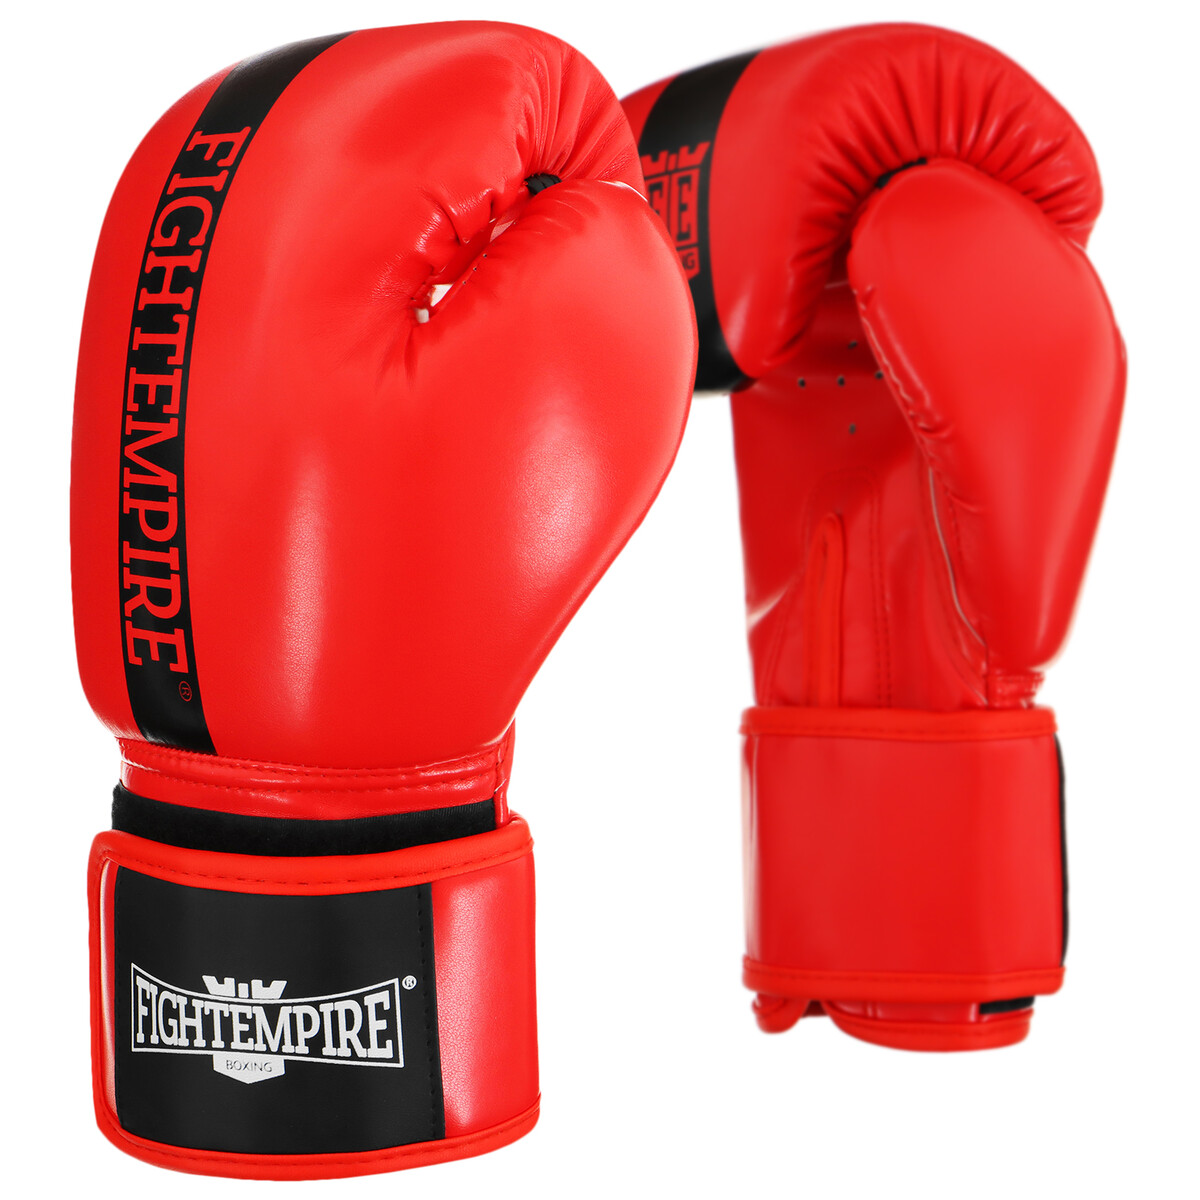 Перчатки боксерские fight empire, 10 унций, цвет красный перчатки боксерские everlast elite prostyle p00001243 8 8oz к з красный